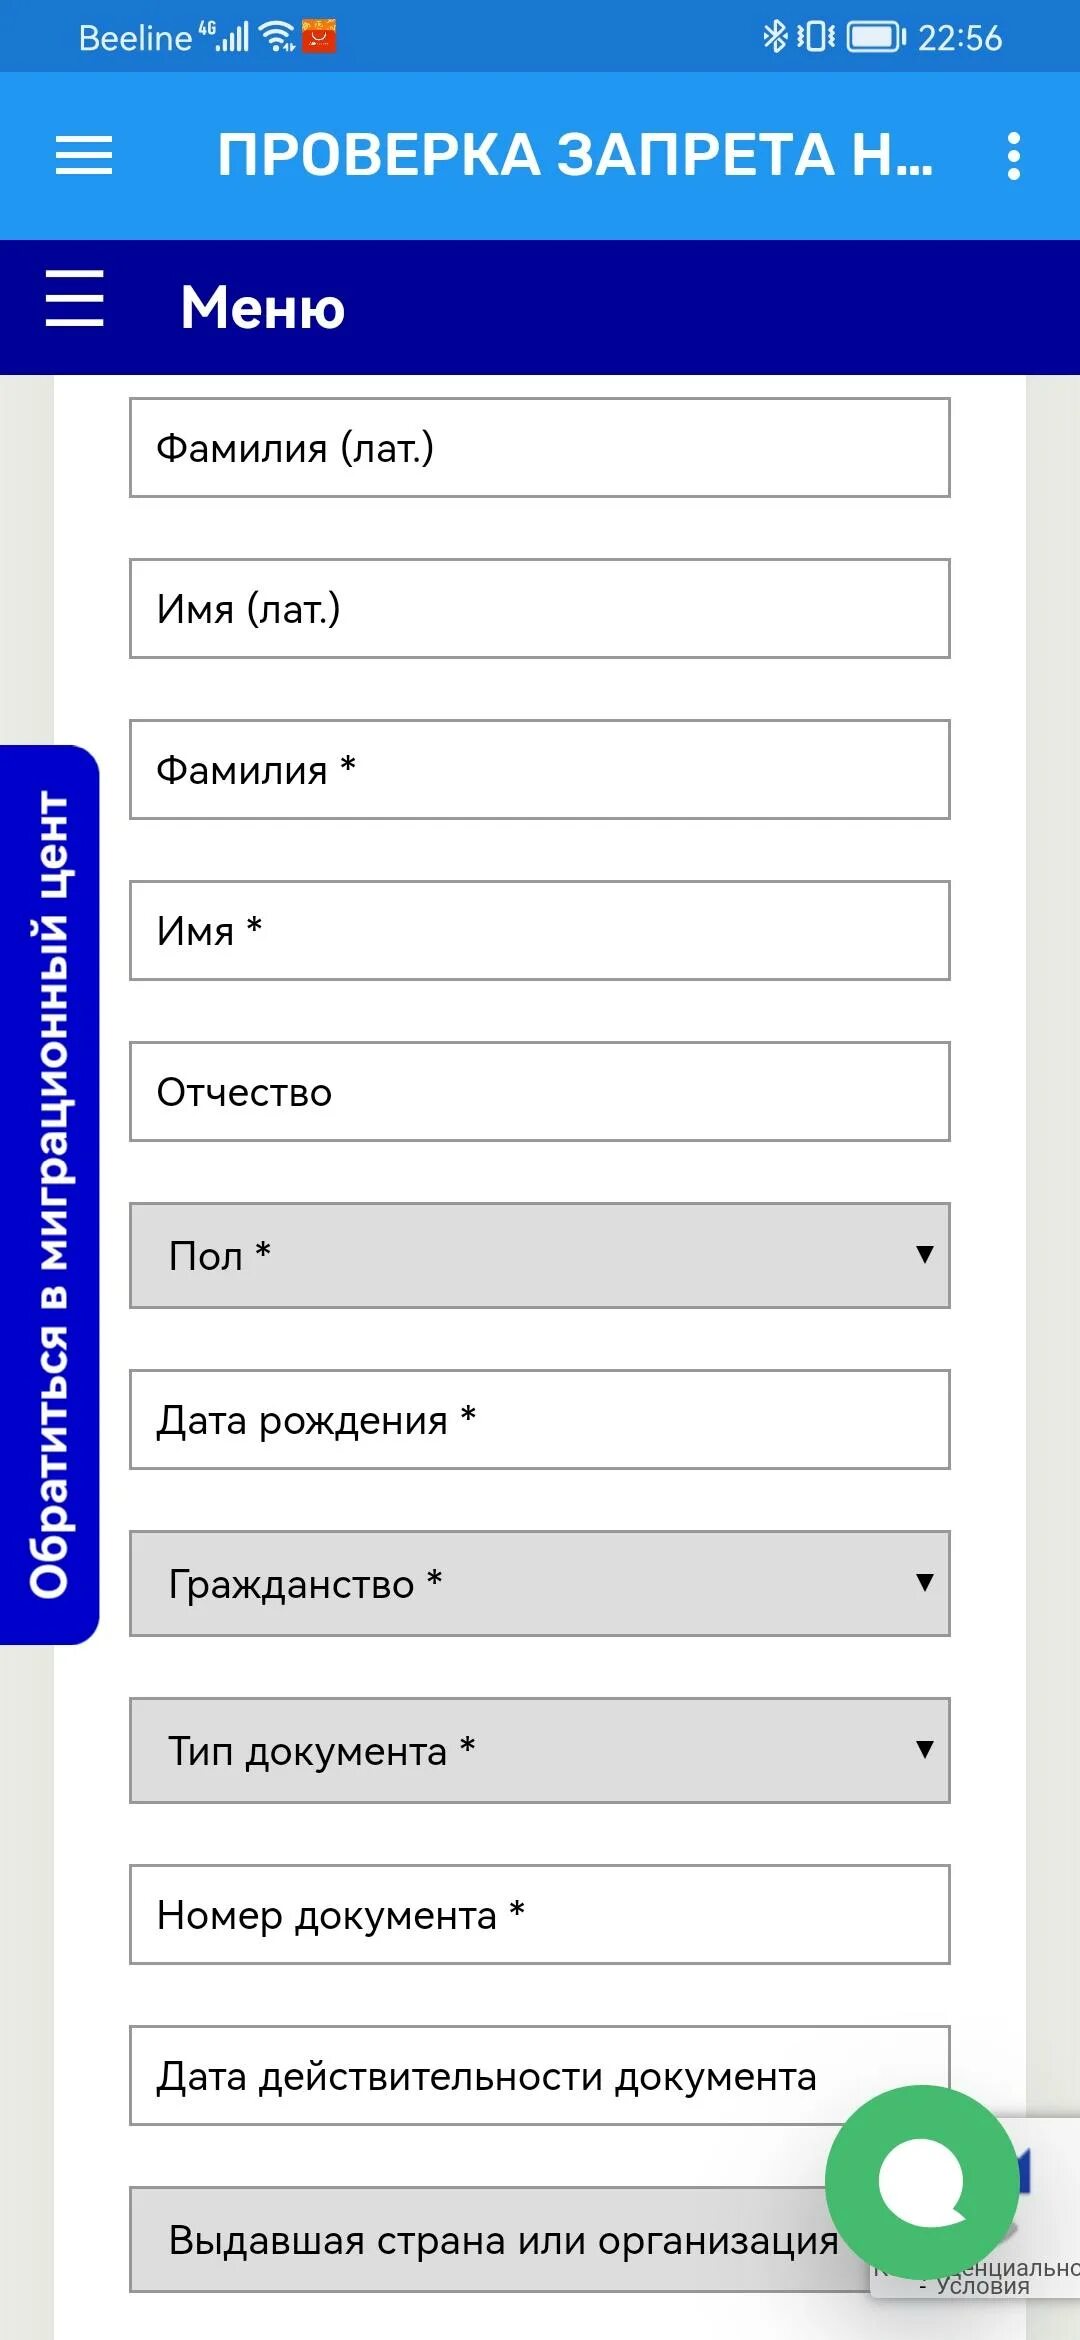 Проверка запрета. Проверка запрета на въезд в Россию. Как можно проверить запрет. Проверка запрета на выезд. Как проверить запрет таджикистана на въезд